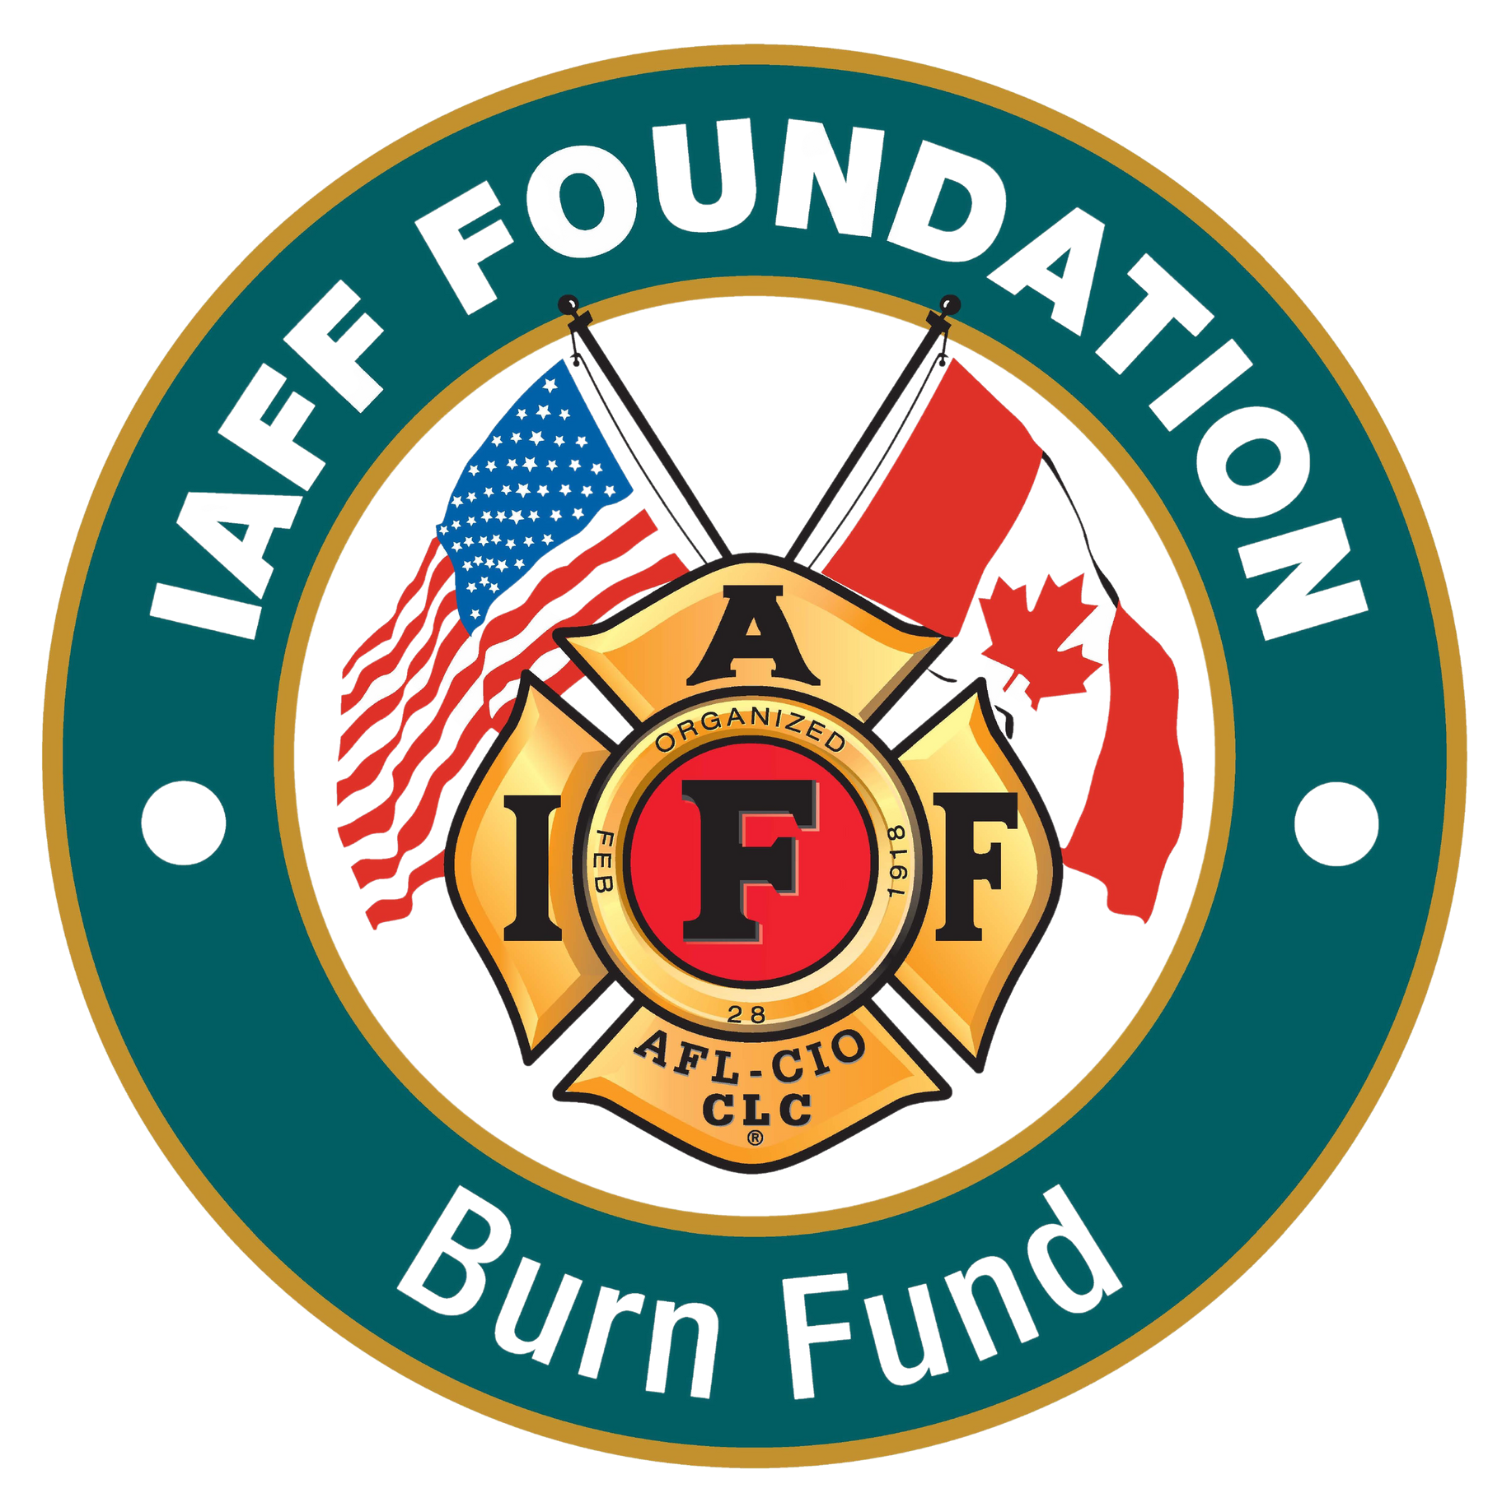  IAFF Foundation Burn Fund